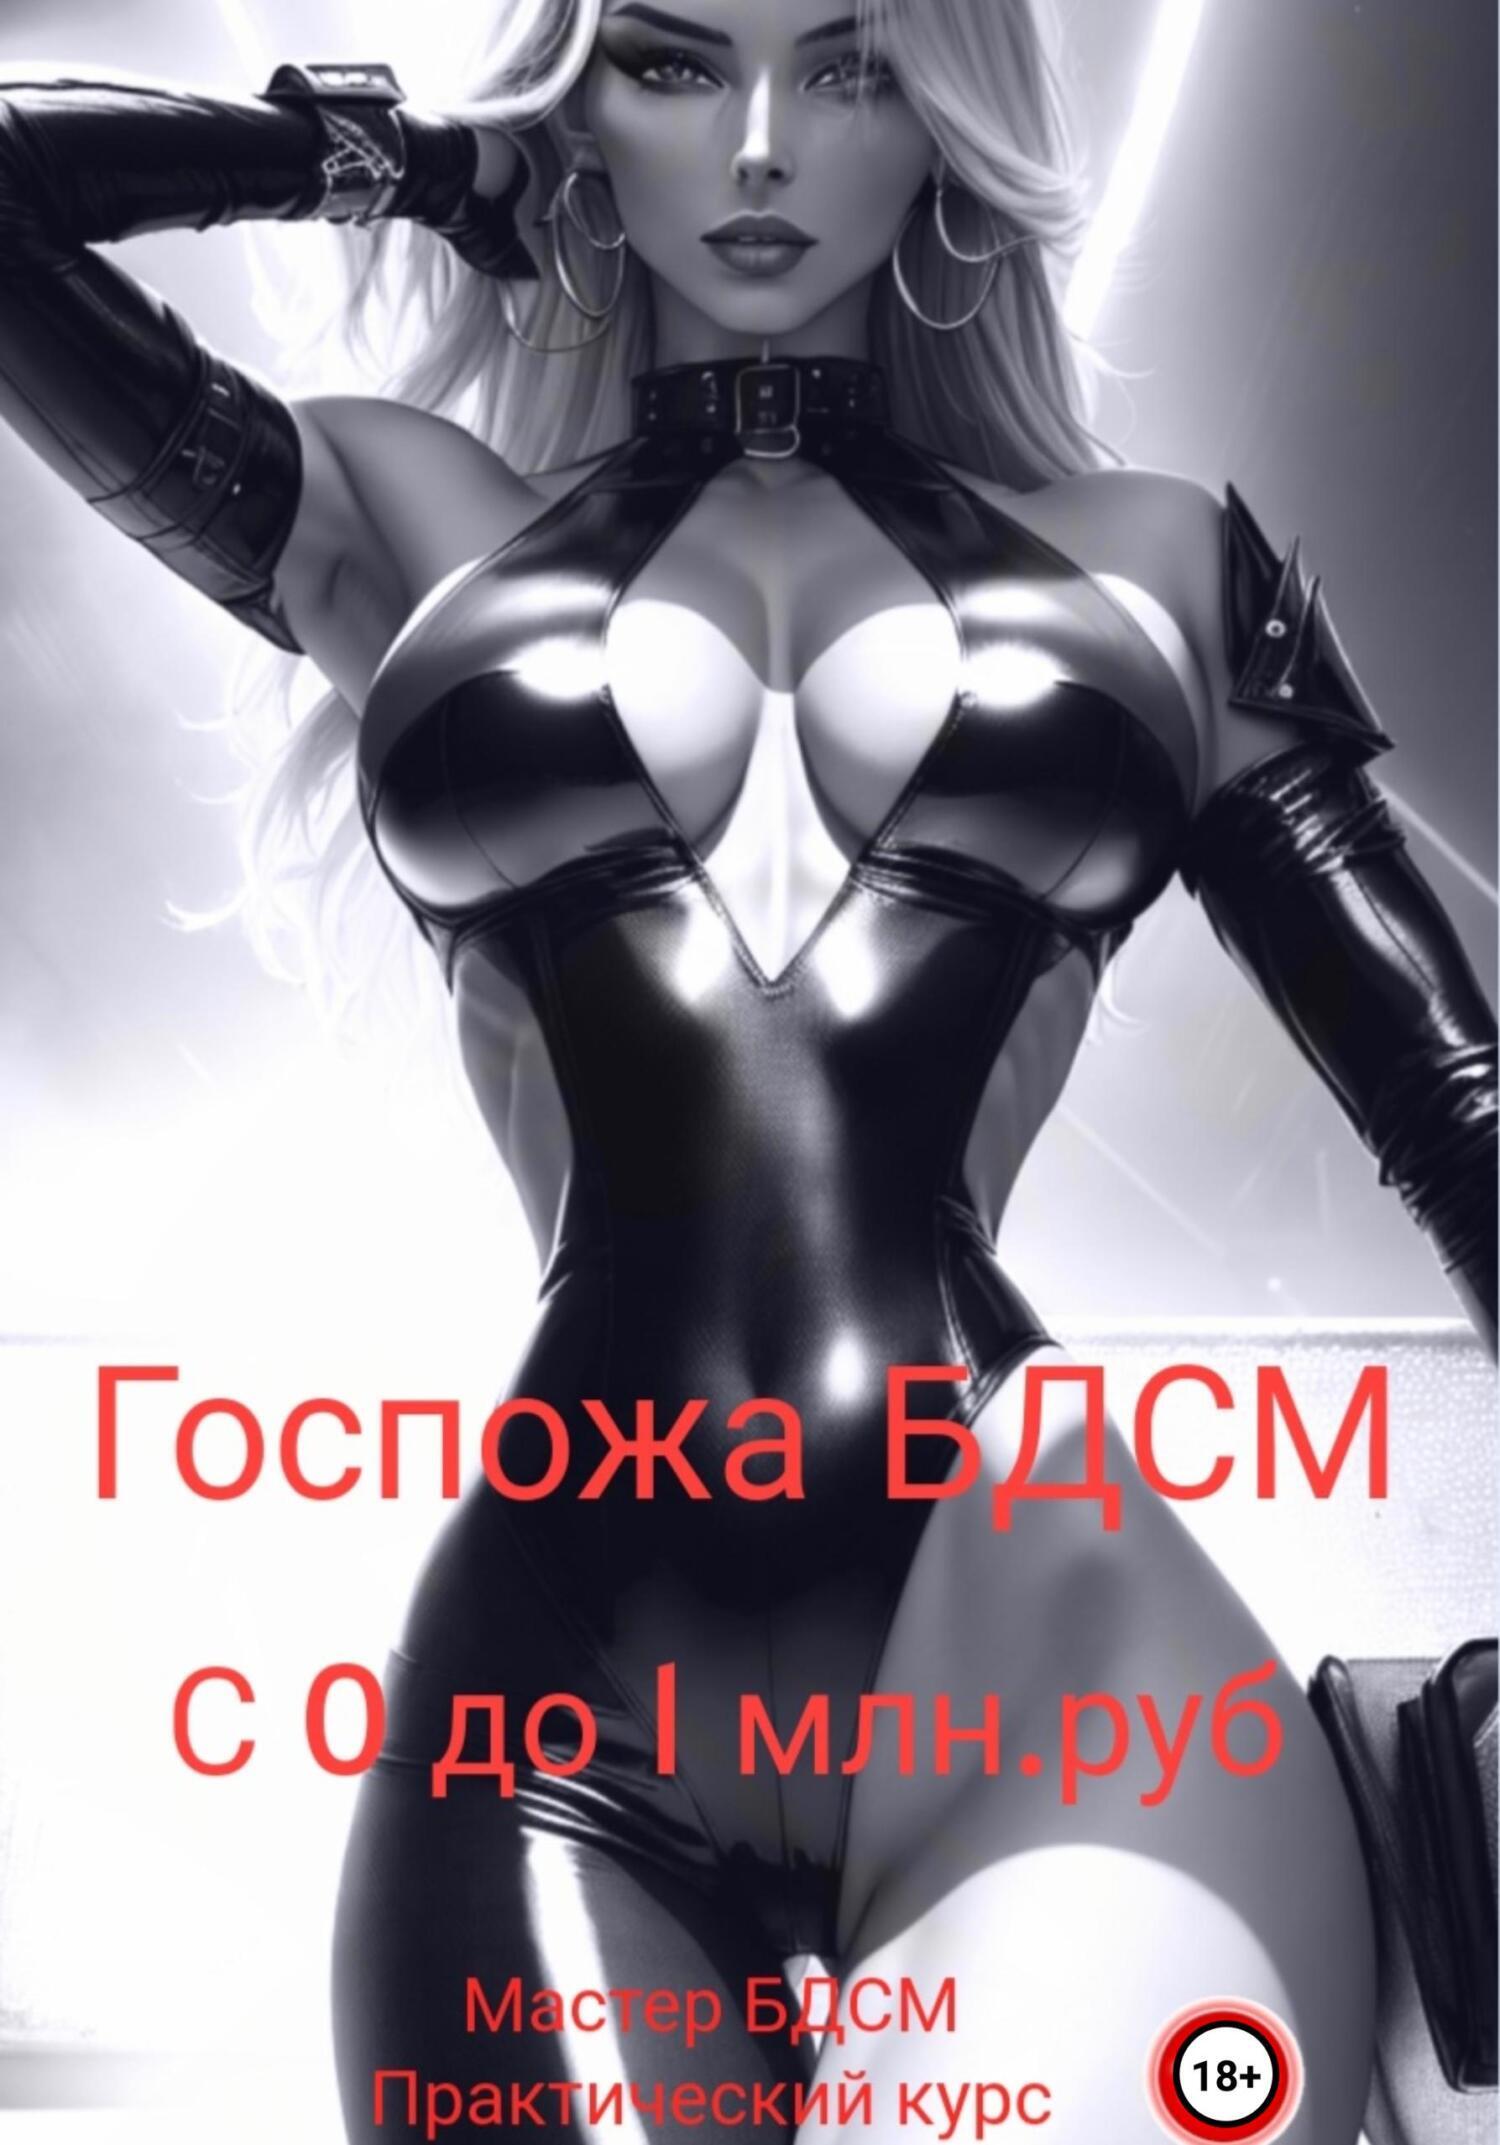 Москва - БДСМ знакомства (BDSM)